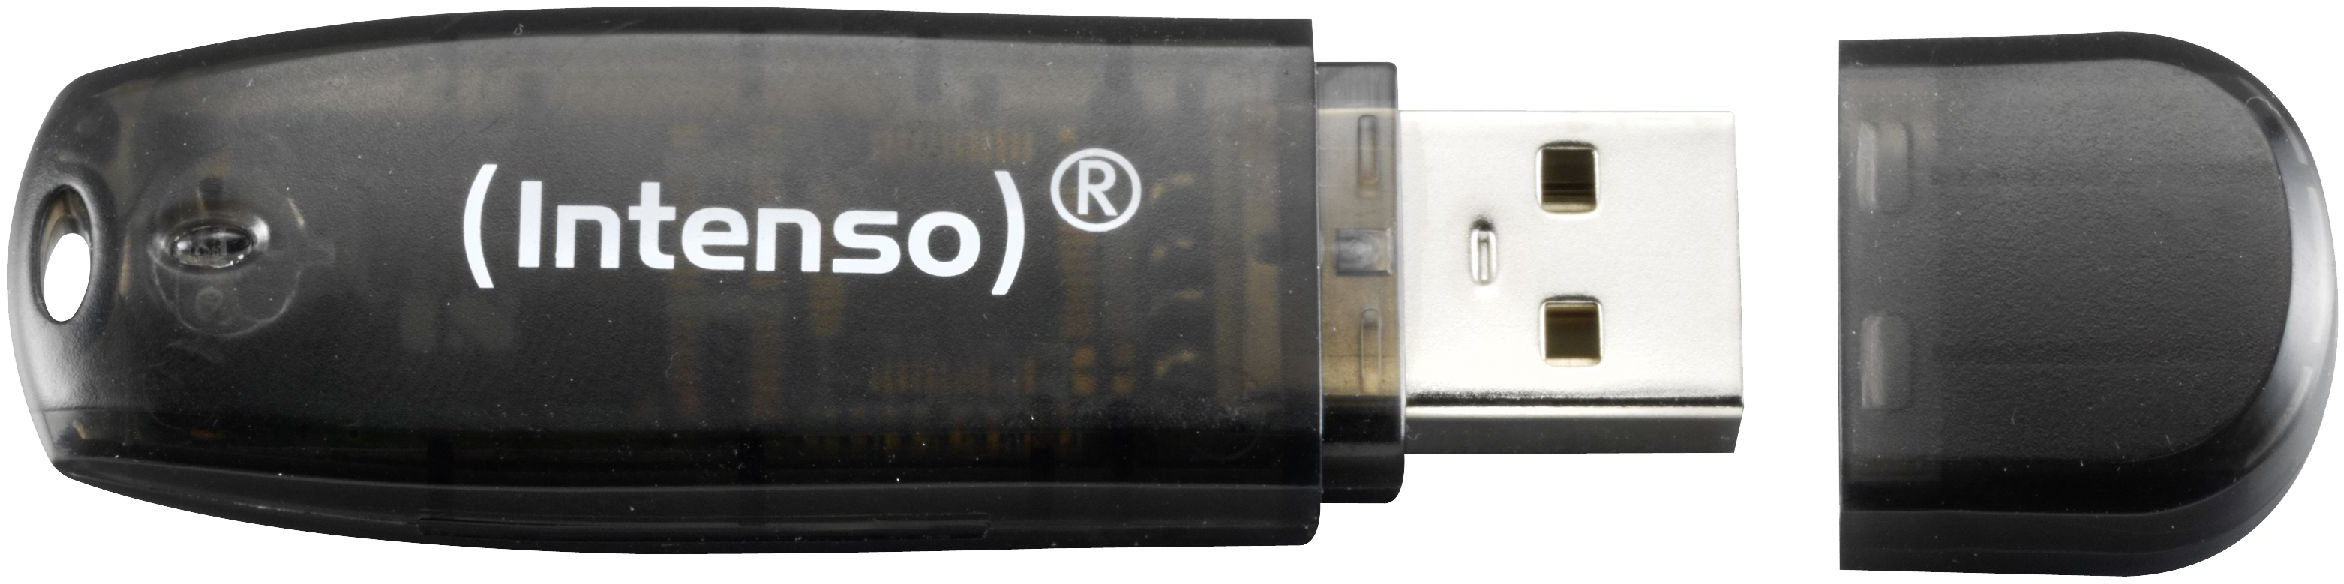 INTENSO USB-Stick Rainbow Line 16GB 3502470 USB 2.0 black USB 2.0 black